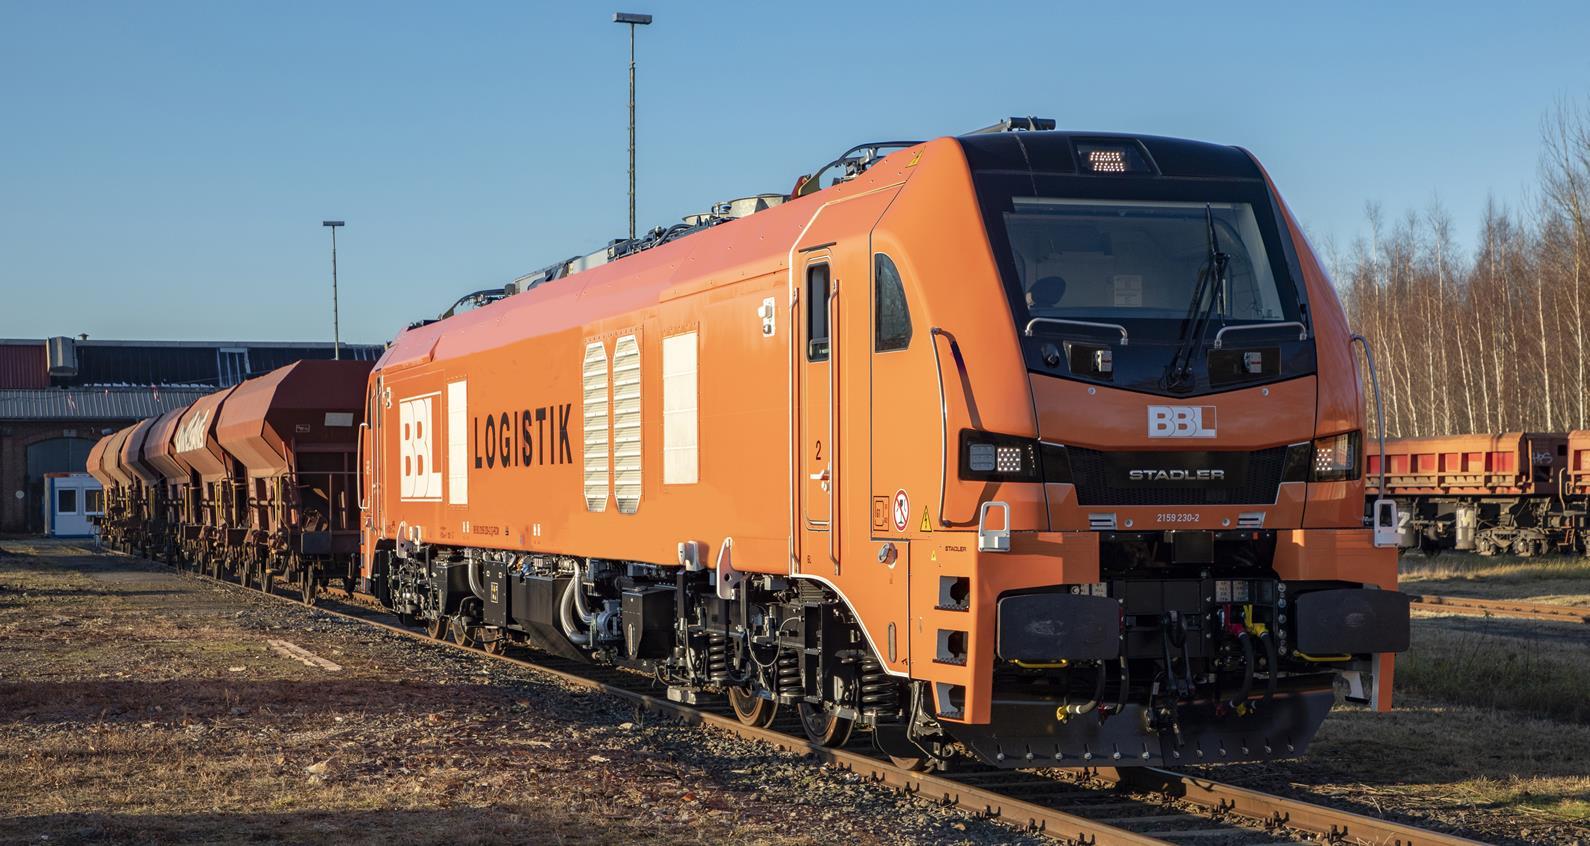 A BBL Logistik első Stadler EuroDualja (kép forrása: Railway Gazette)